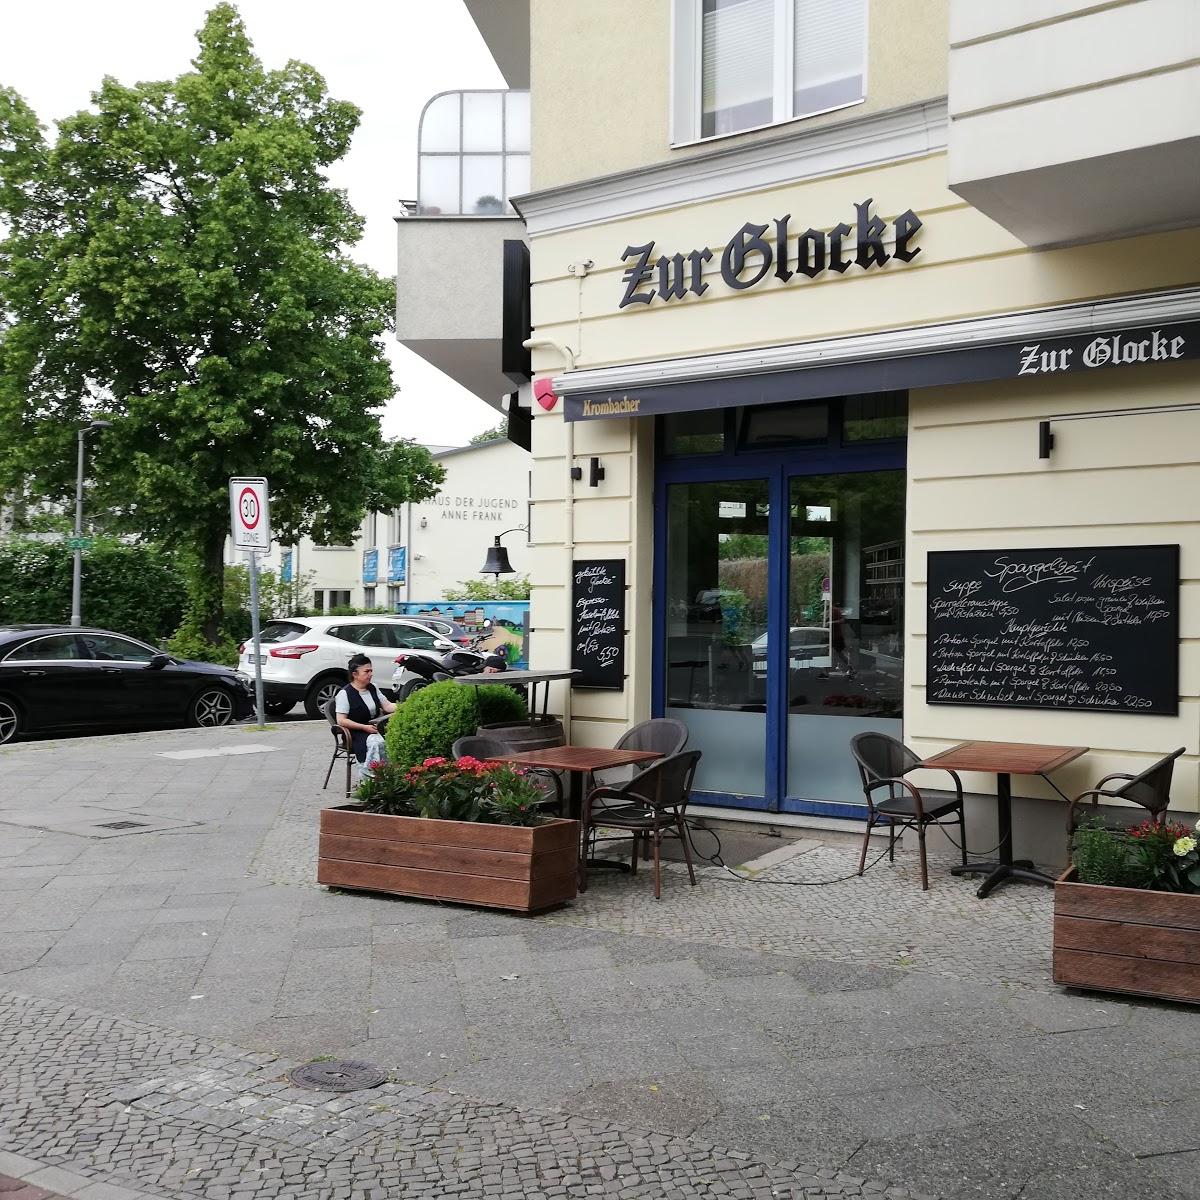 Restaurant "Zur Glocke Restaurant" in Berlin